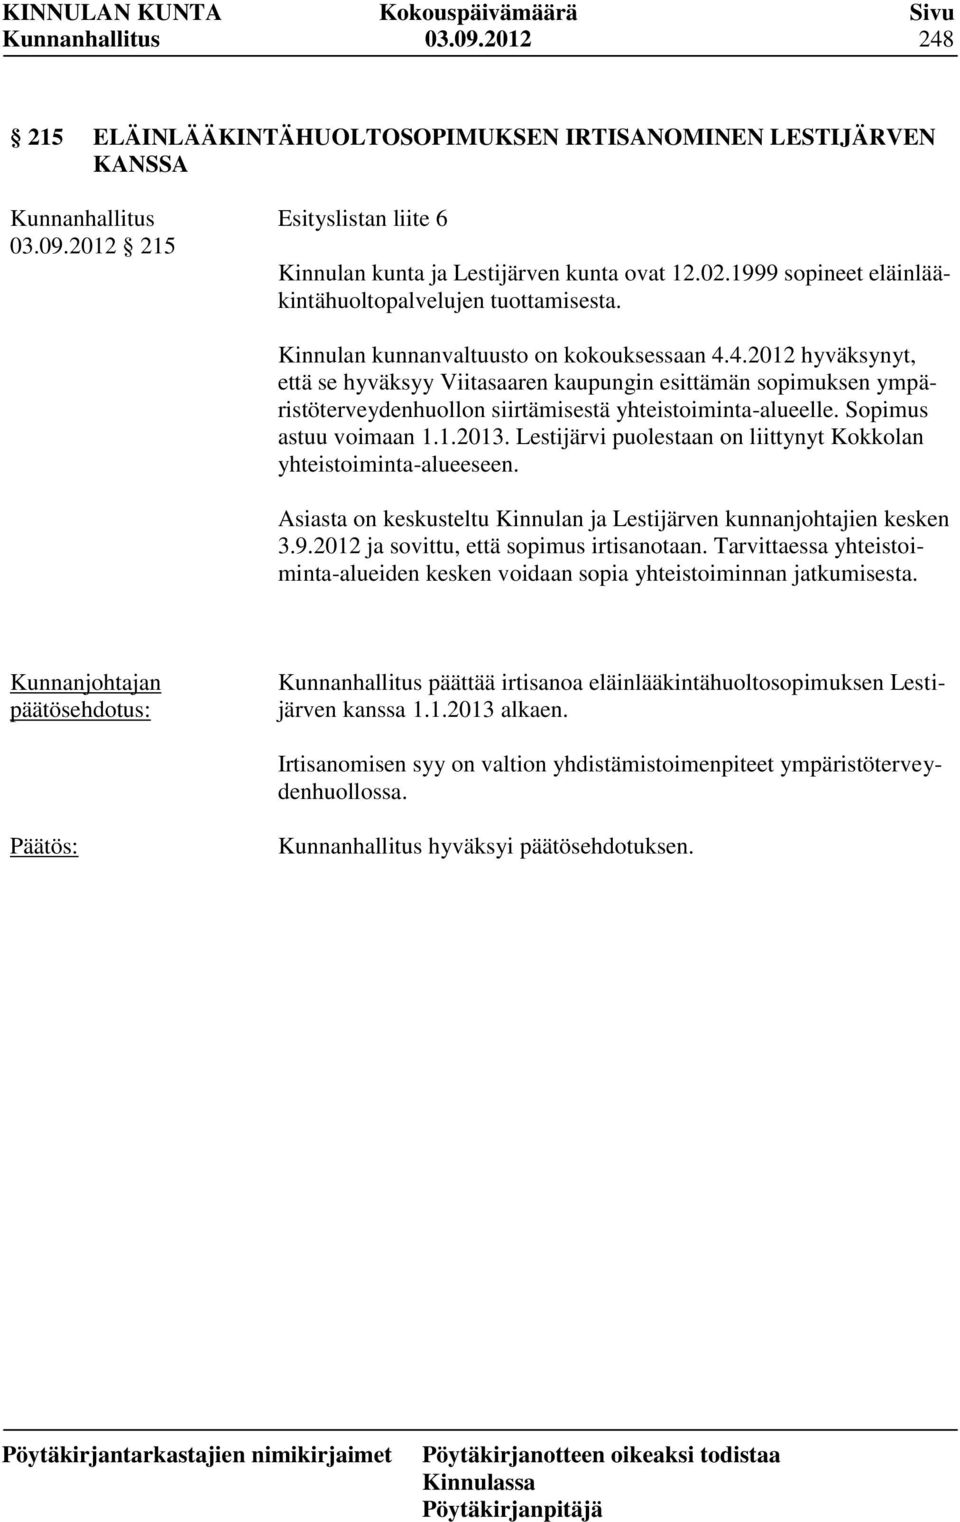 4.2012 hyväksynyt, että se hyväksyy Viitasaaren kaupungin esittämän sopimuksen ympäristöterveydenhuollon siirtämisestä yhteistoiminta-alueelle. Sopimus astuu voimaan 1.1.2013.